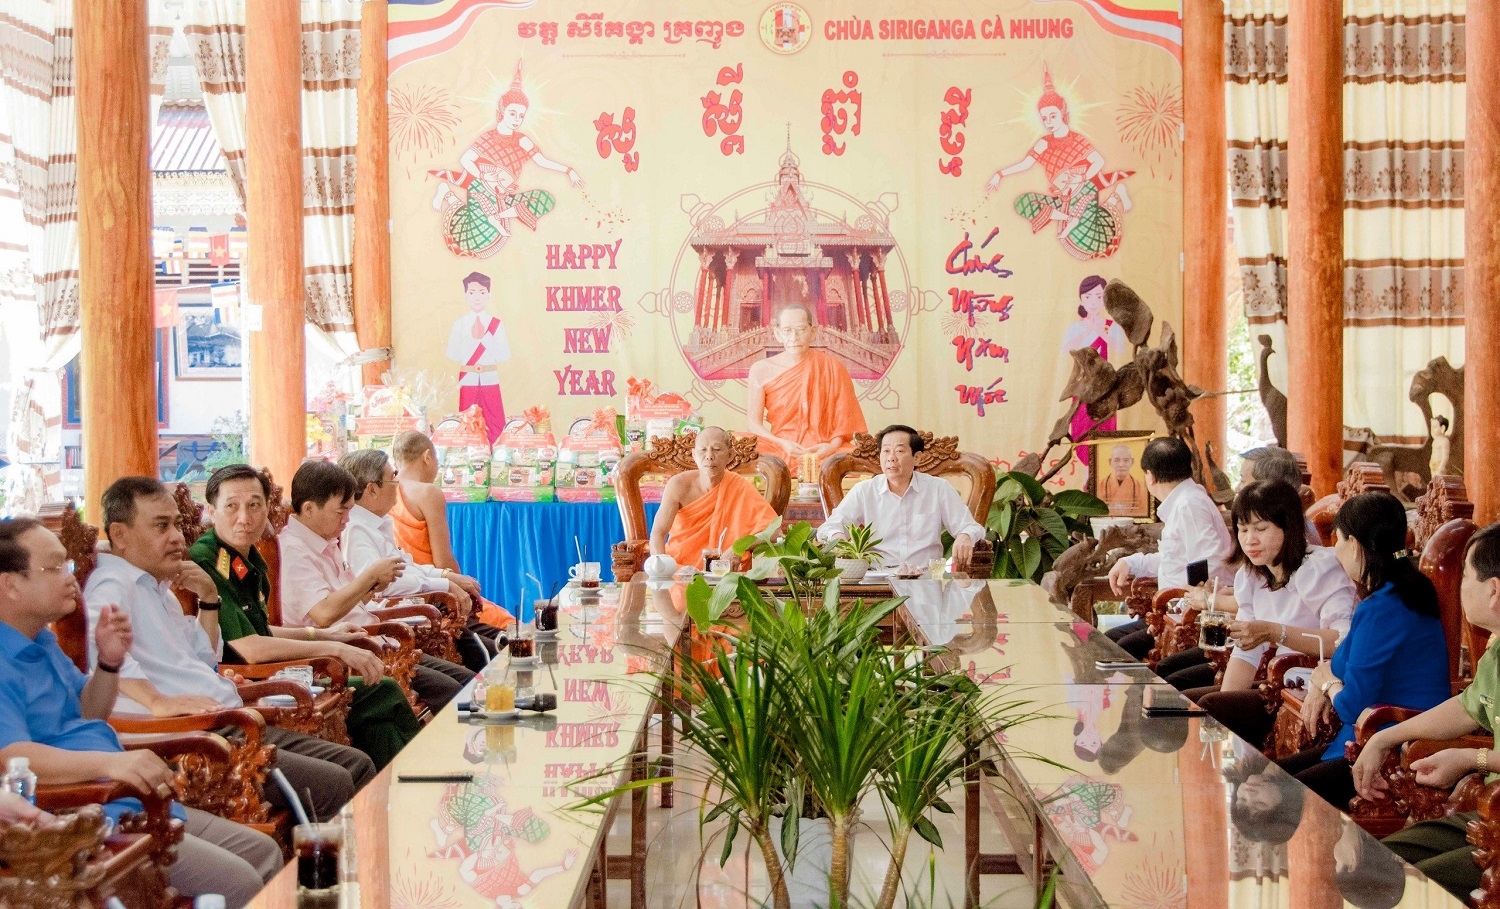 Ông Đỗ Thanh Bình - Ủy viên Trung ương Đảng, Bí thư Tỉnh ủy Kiên Giang gửi lời chúc mừng đến các vị cao tăng, chức sắc, chư tăng, người có uy tín trong đồng bào Khmer đón lễ Sene Dolta năm 2023 vui tươi, đầm ấm và hạnh phúc.